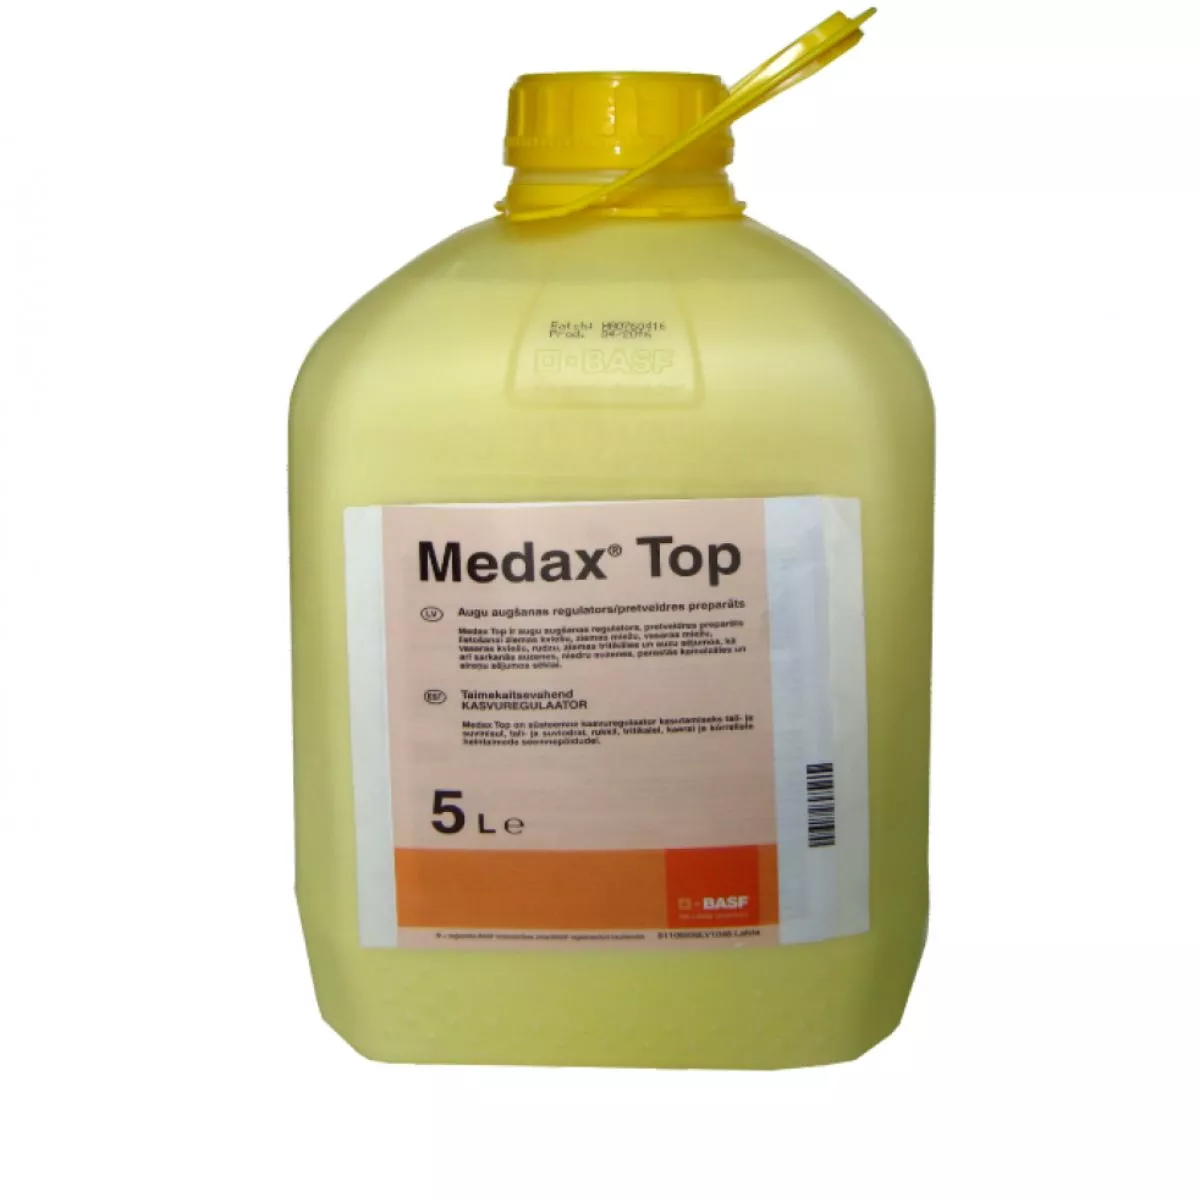 Regulator de crestere cereale paioase Medax Top, 5L 1